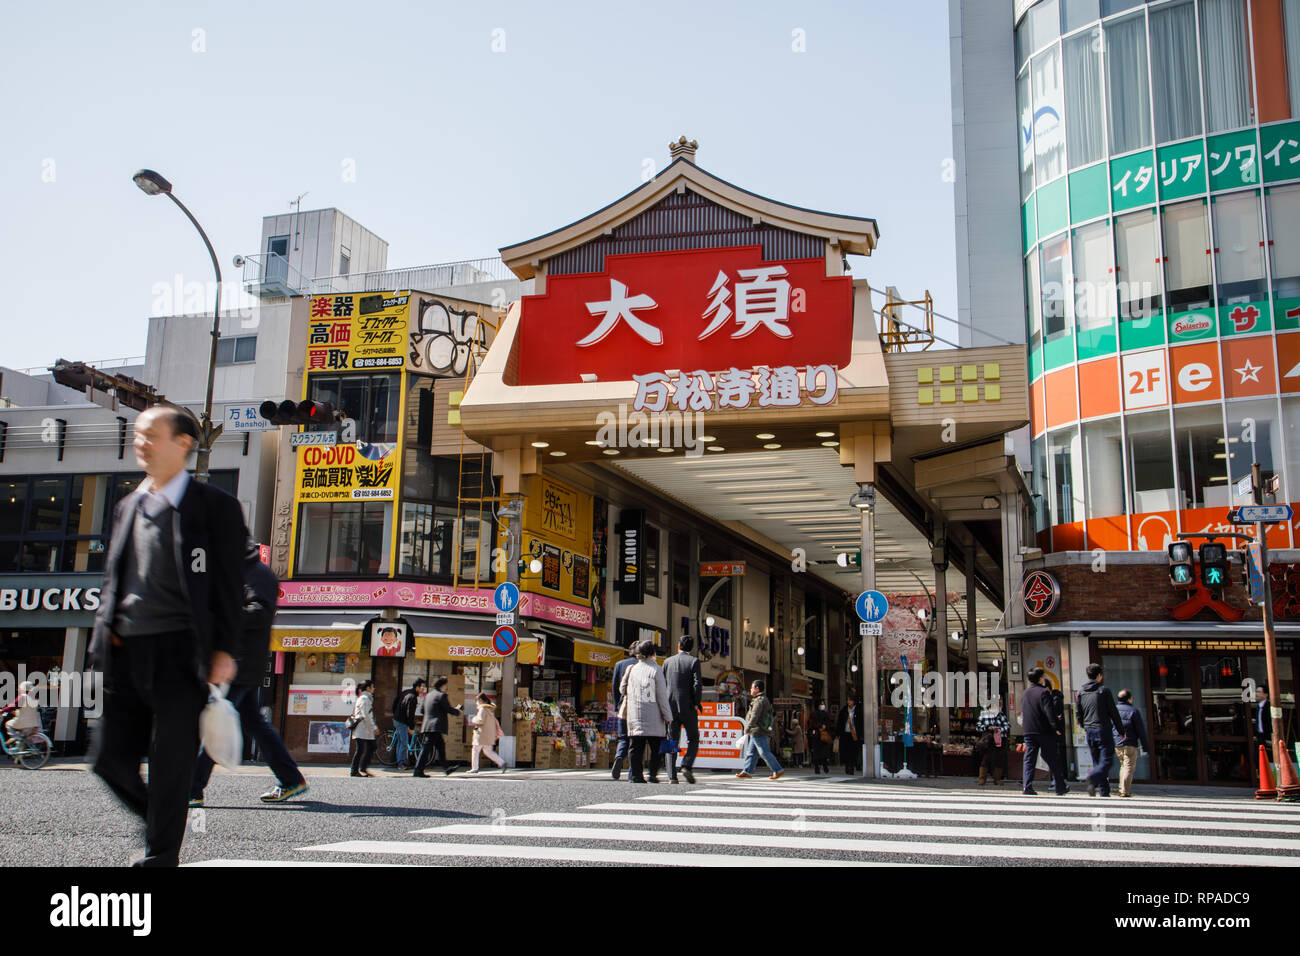 Blick auf den Haupteingang der Straße in Osu. Osu ist einer der bekanntesten touristischen Shopping Spots in Nagoya, Aichi, Japan. Die Osu Einkaufsviertel ist seit 400 Jahren als die kommerzielle Straßen in einem Gebietsschema mit einer Konzentration von buddhistischen Tempeln, und von Anfang an als Zentrum für traditionelle Unterhaltung und Kultur geblüht hat. Stockfoto